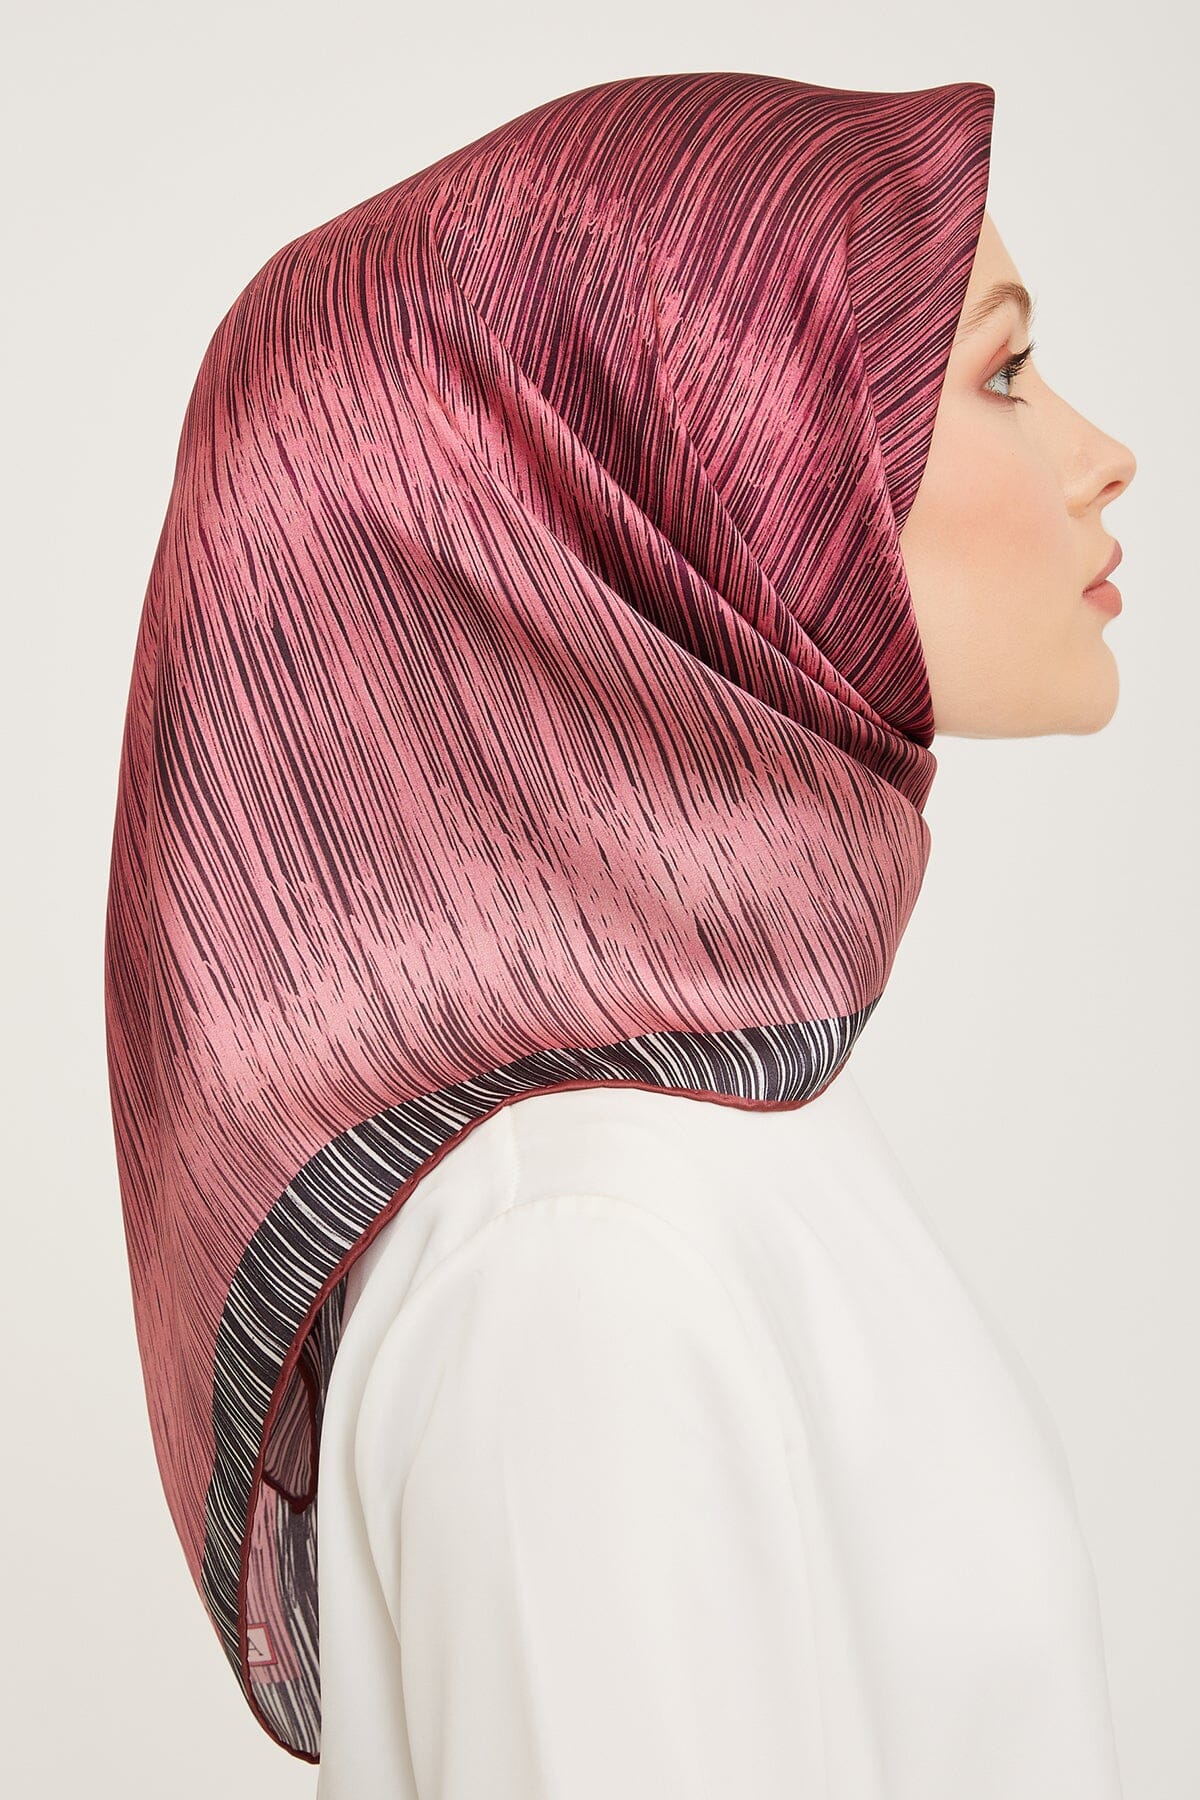 Armine Myers Silk Hair Wrap #33 Silk Hijabs,Armine Armine 